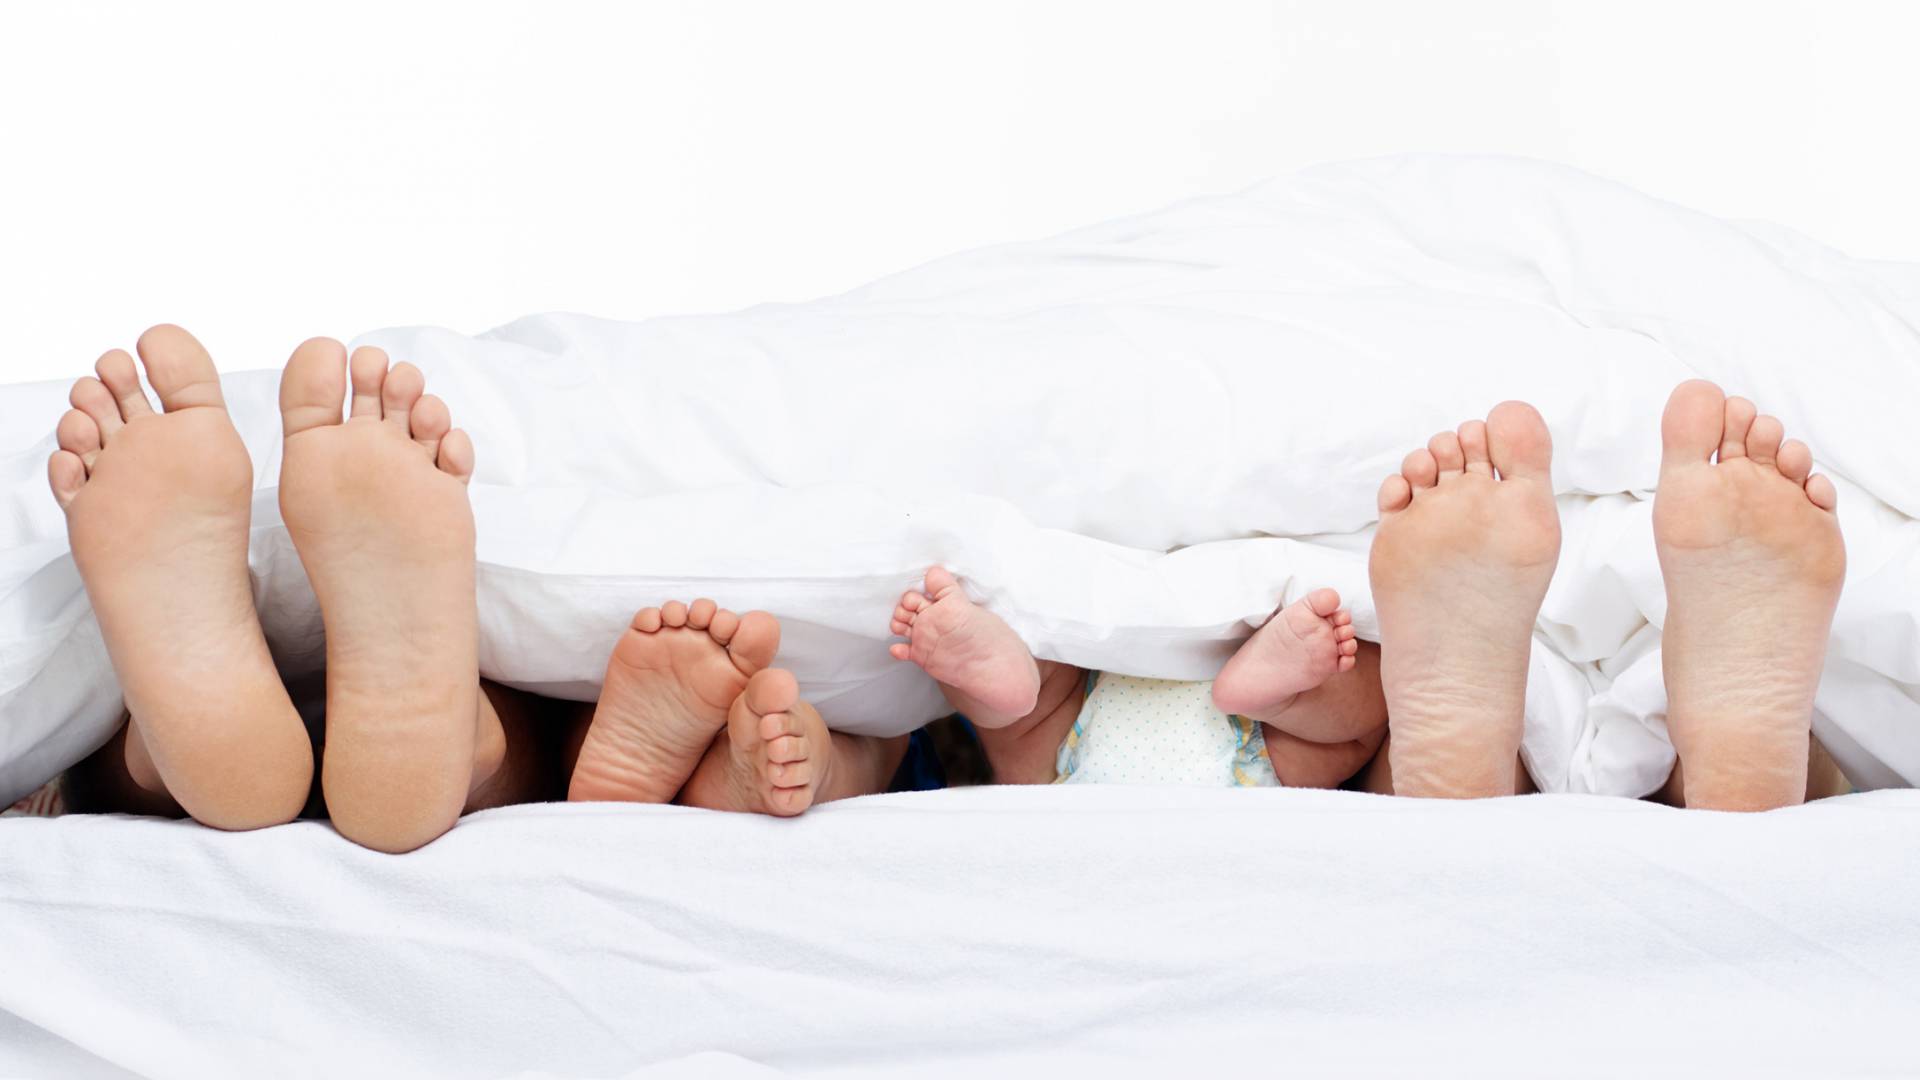 Füße von Eltern und Babys scheinen unter einer Decke hervor